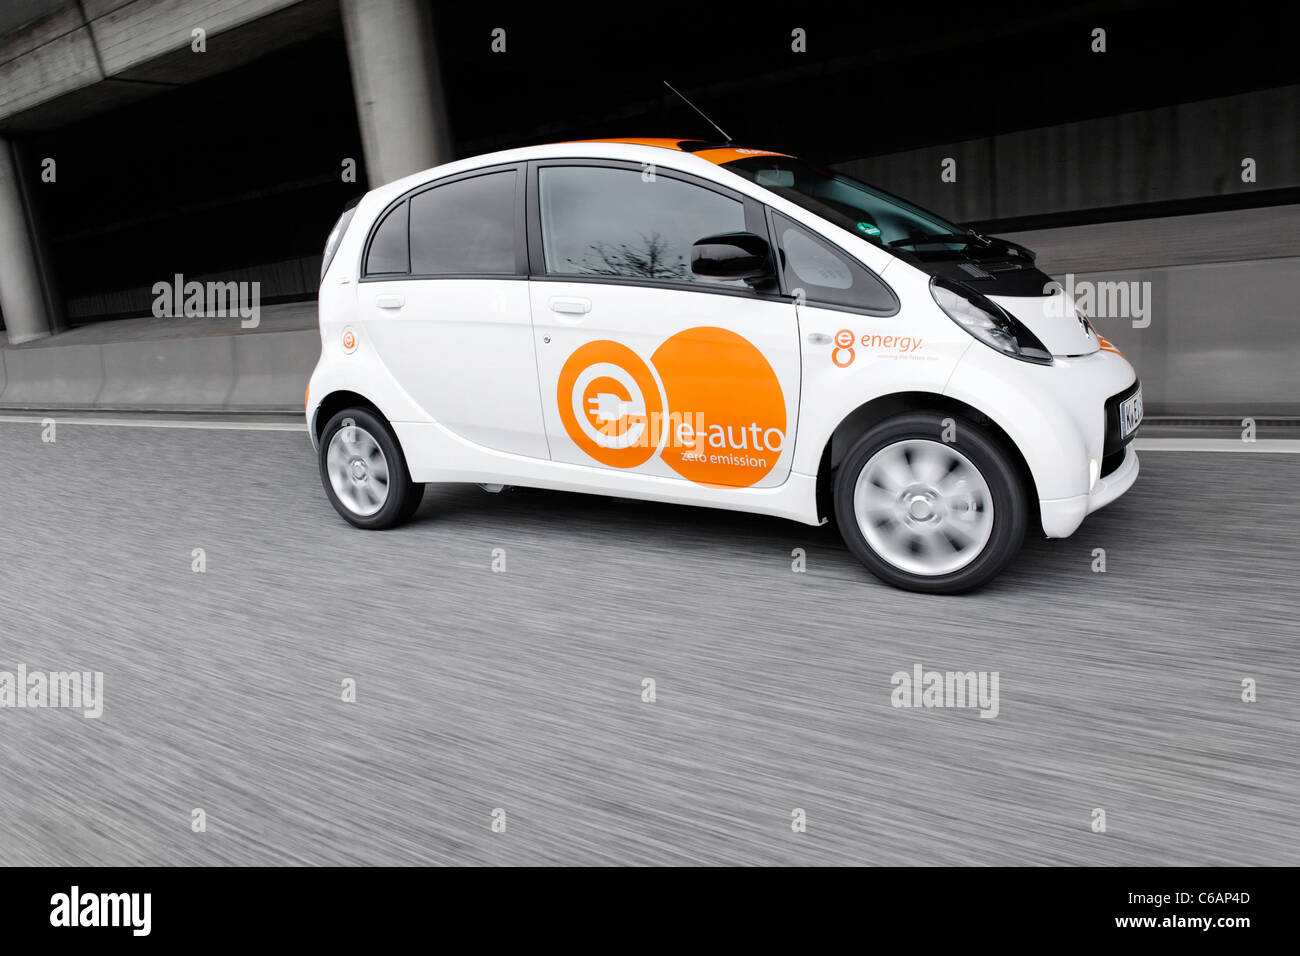 Premier produit de série, voiture électrique complète en Allemagne, la Citroën C-Zero Airdream, véhicule électrique E-voiture, Hambourg, Allemagne Banque D'Images